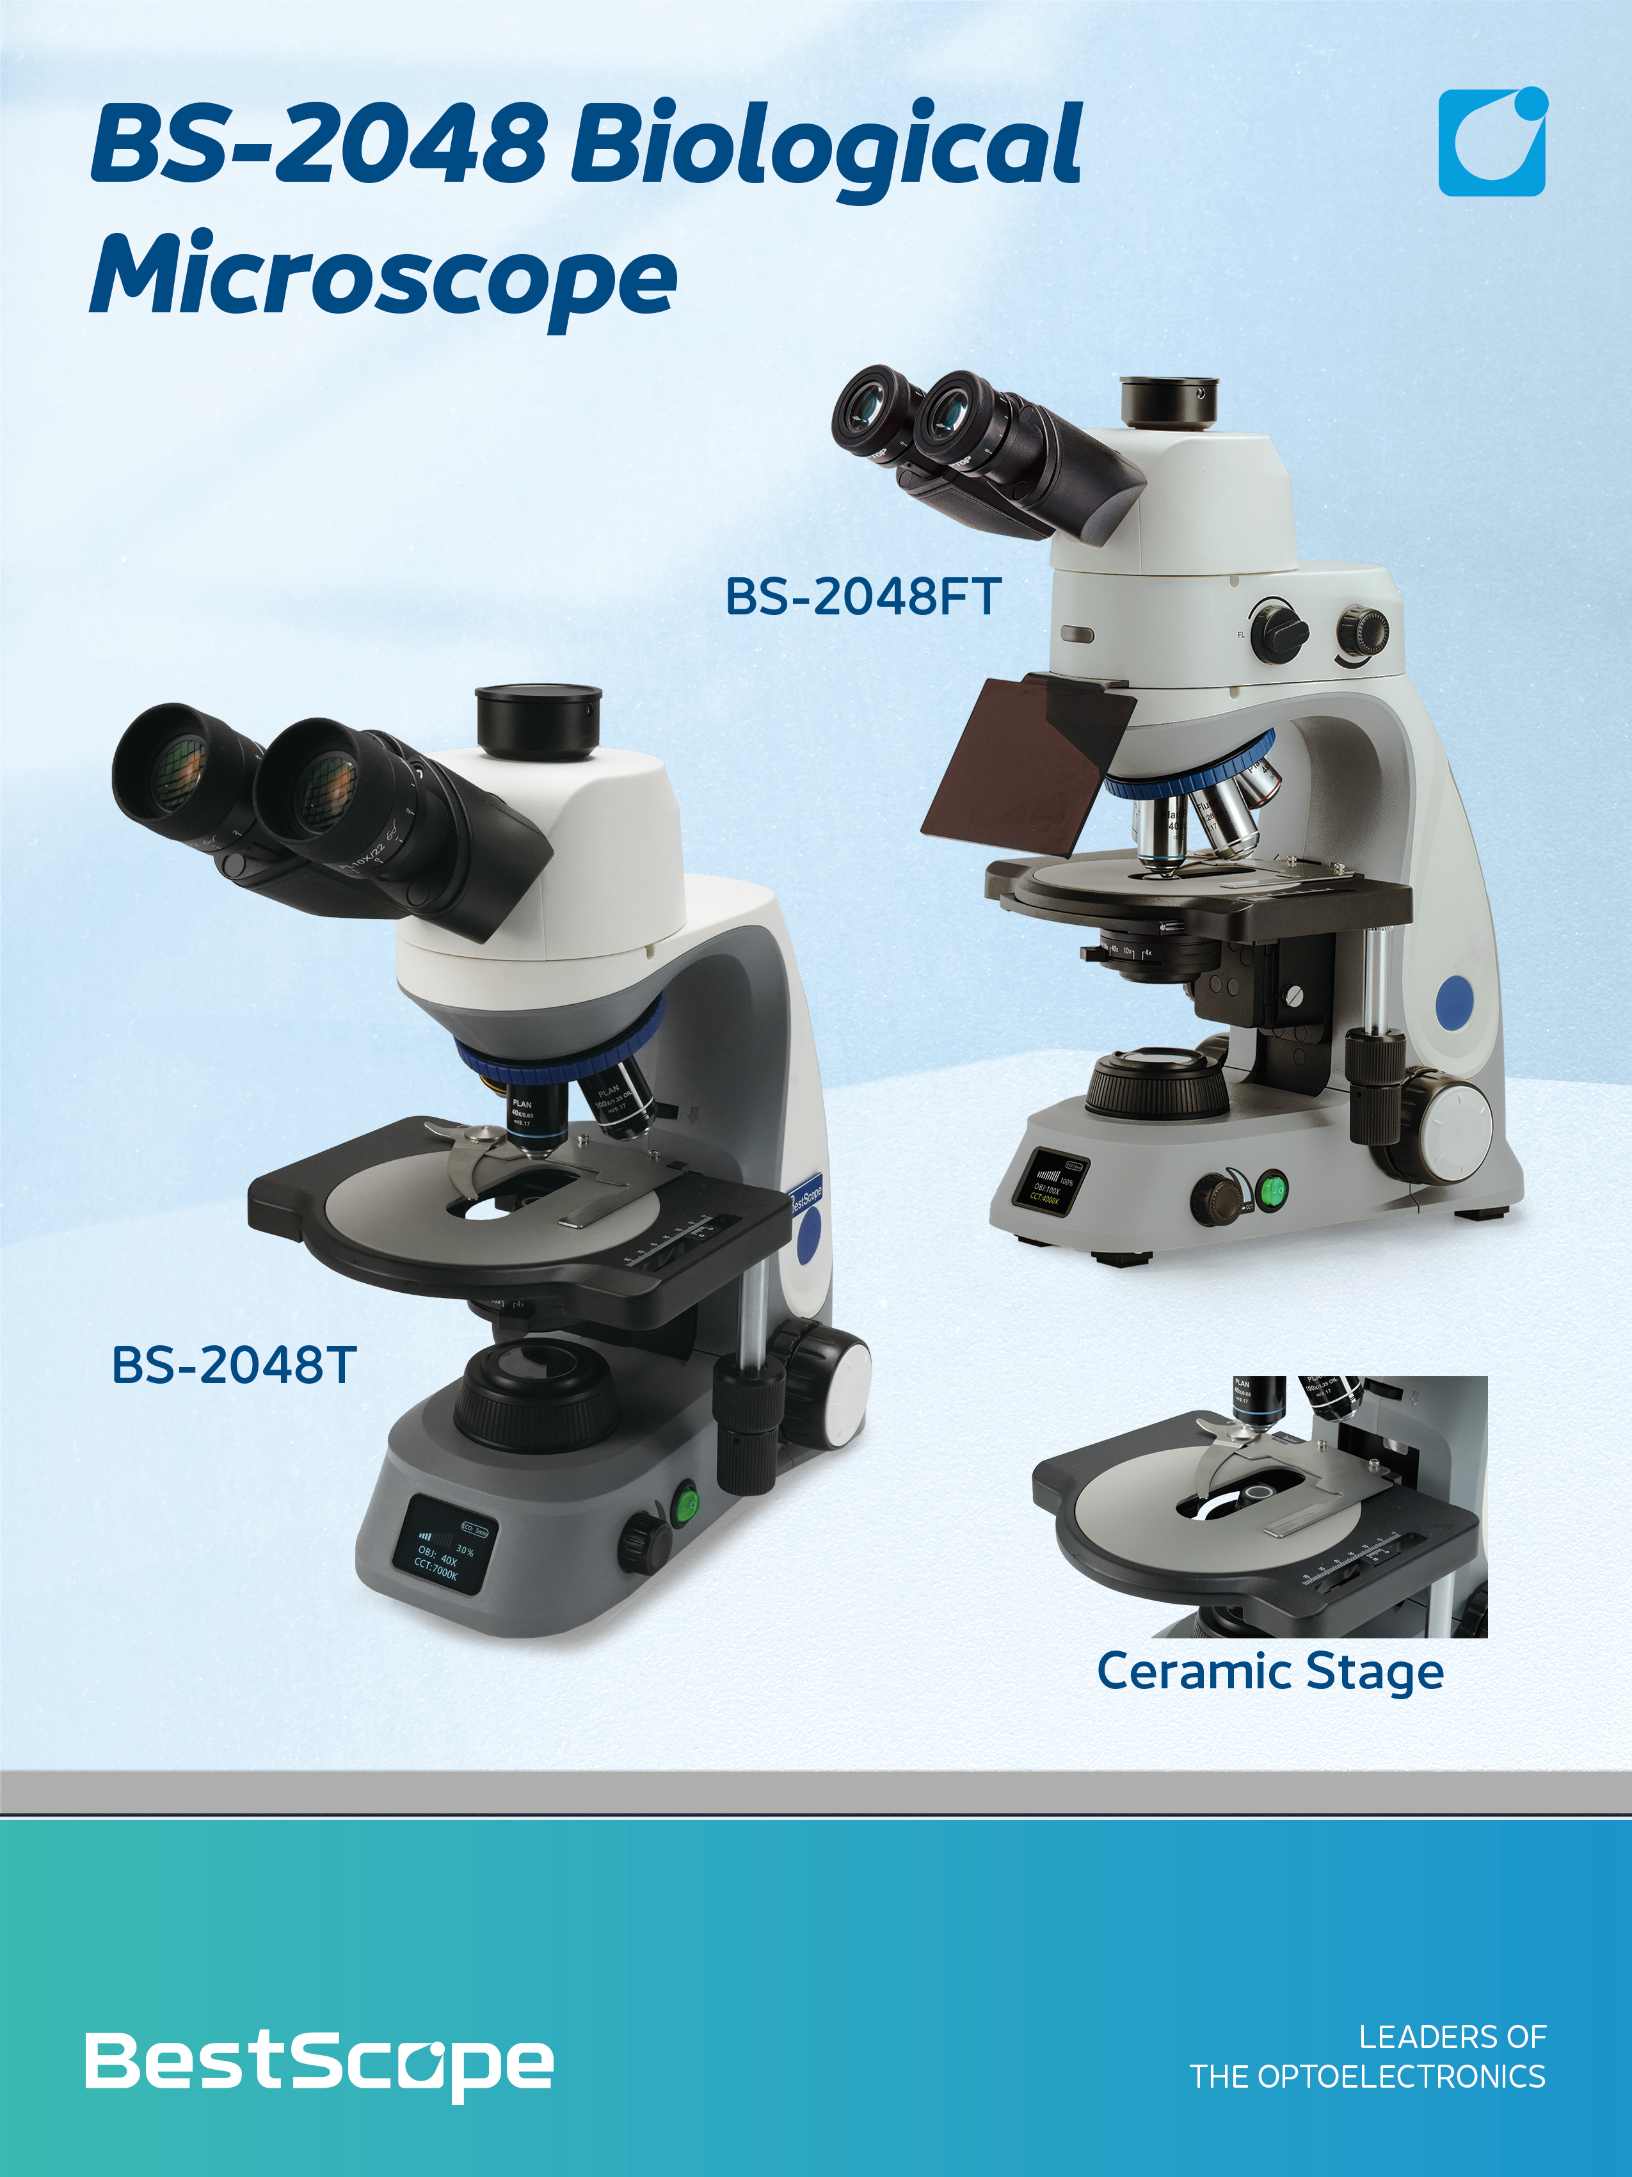 BS-2048 Microscope Biological